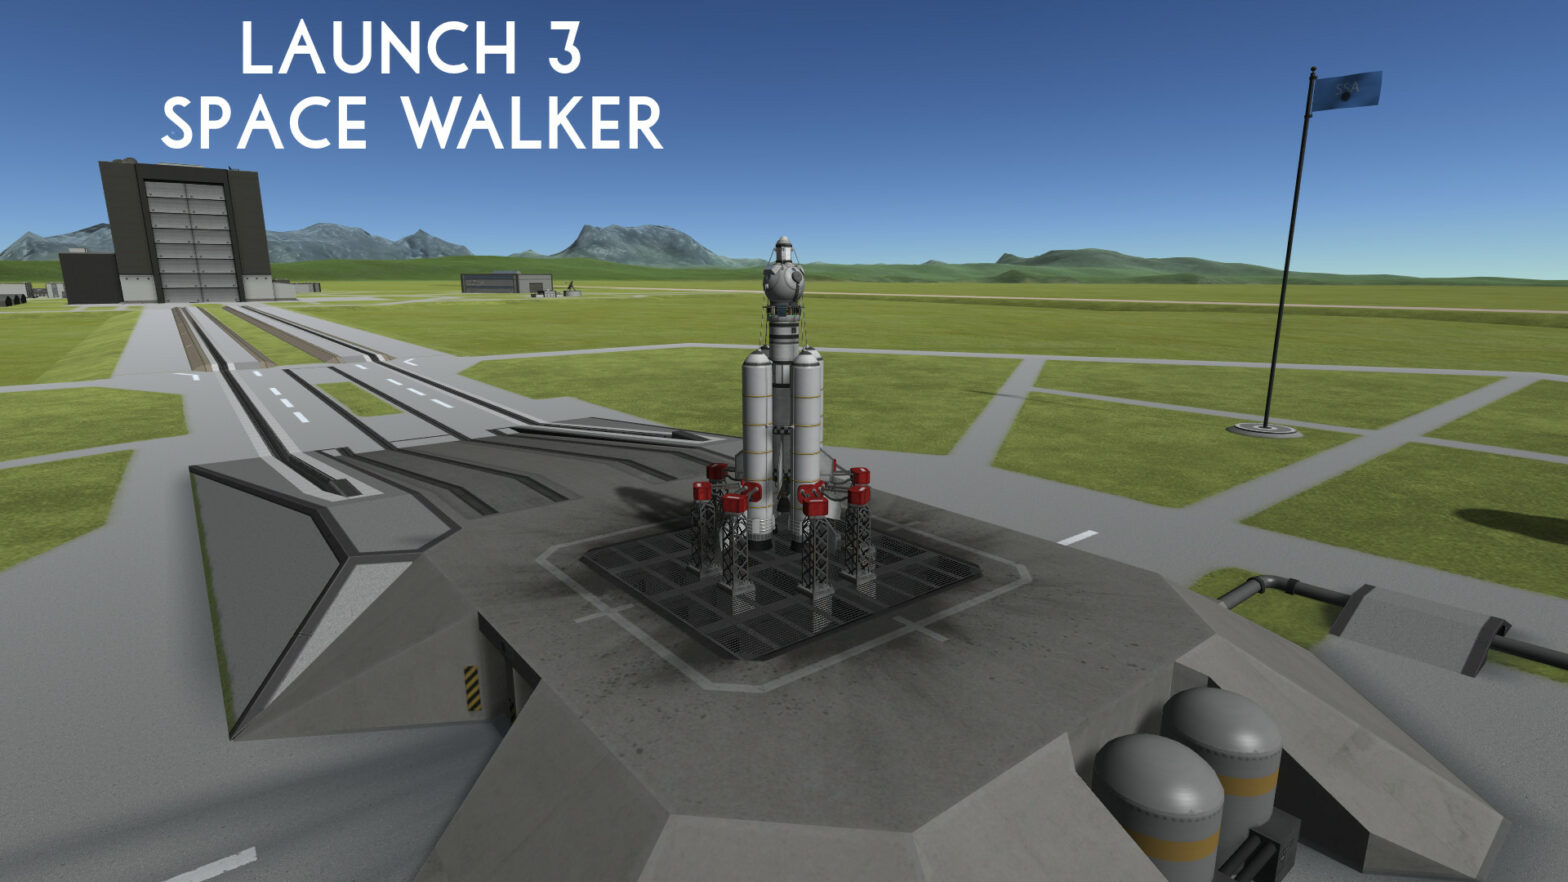 Launch 3 – Space Walker